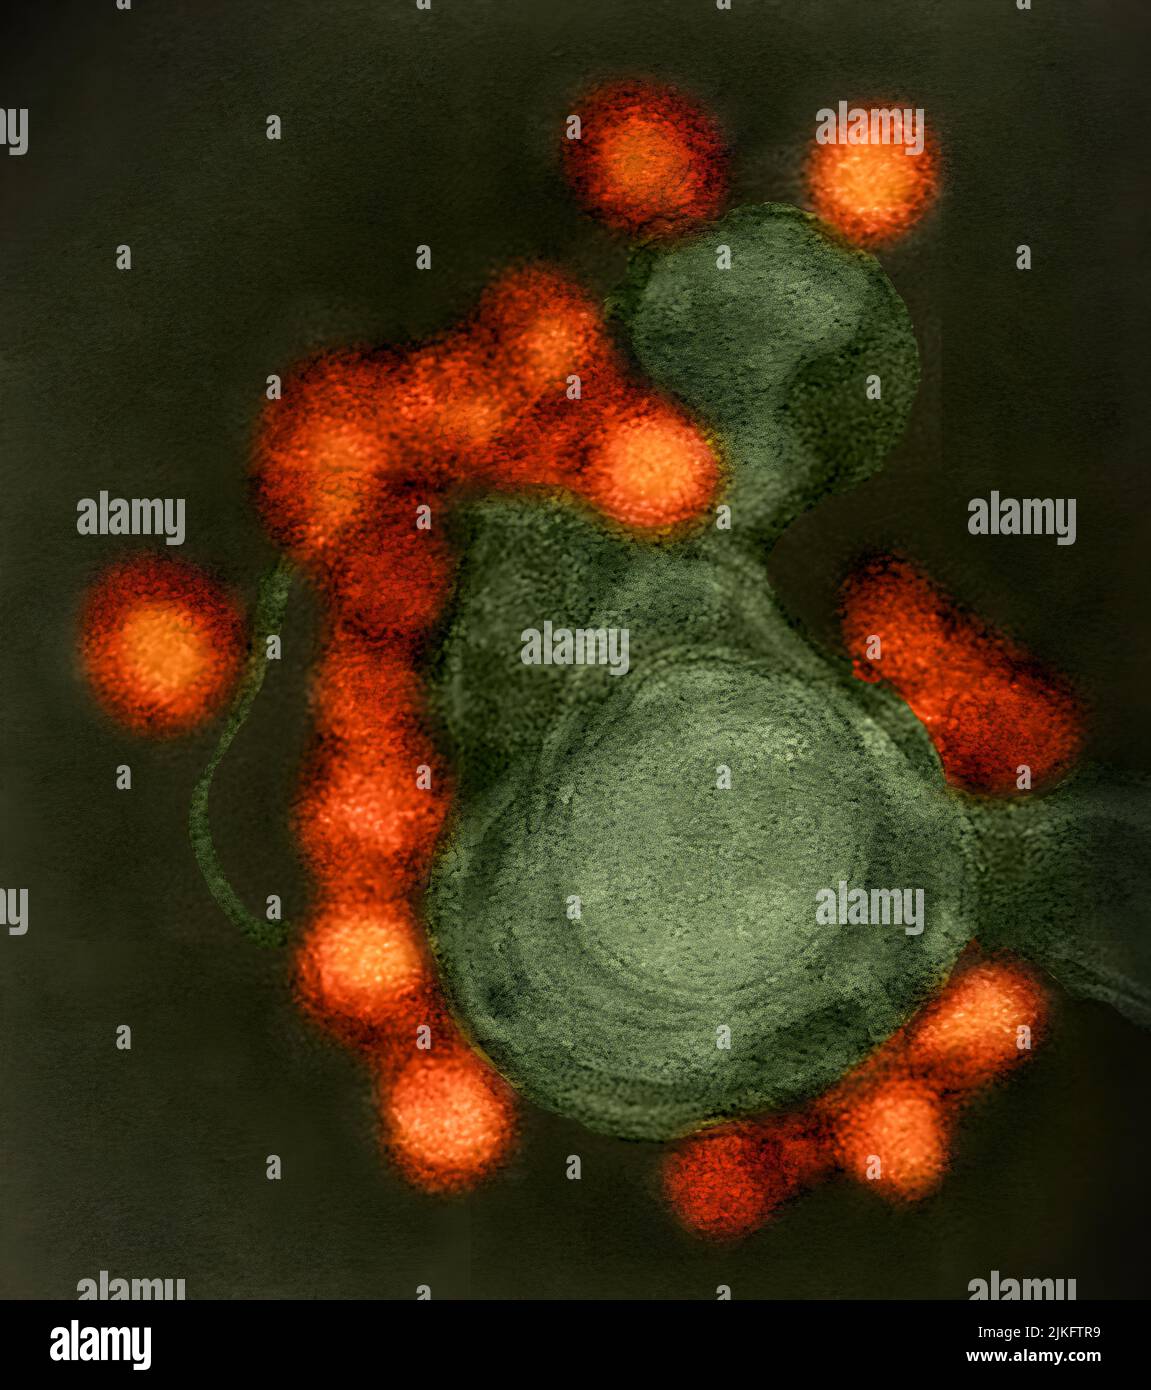 Transmissions-Elektronenmikroskop-Aufnahme des Fortaleza-Stamm-Zika-Virus (rot), negativ gefärbt, isoliert von einem Fall von Mikrozephaly in Brasilien. Stockfoto